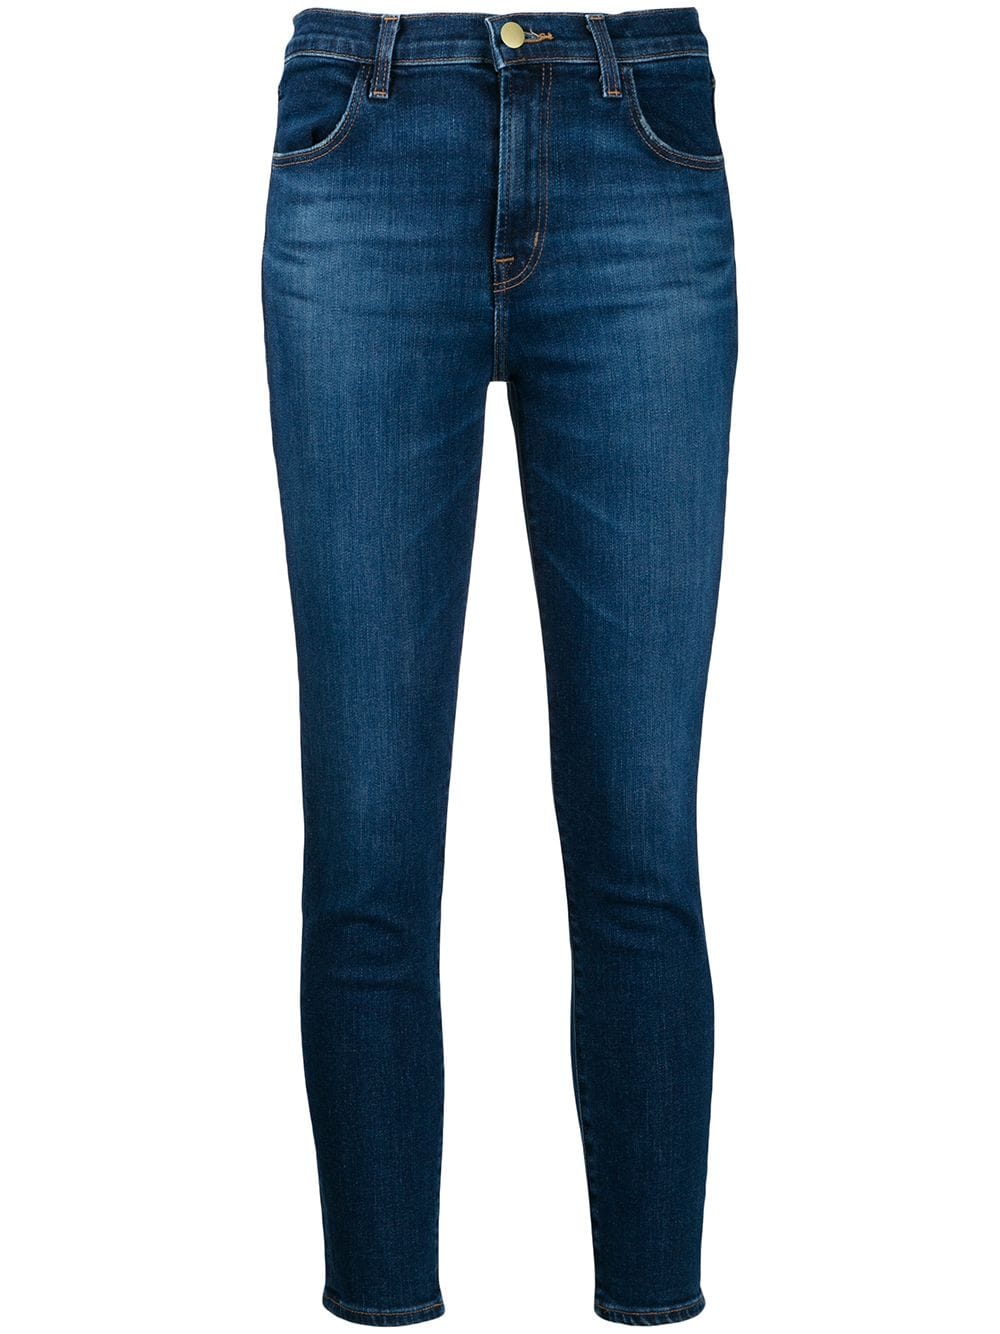 J Brand Cropped Skinny Jeans - Farfetch